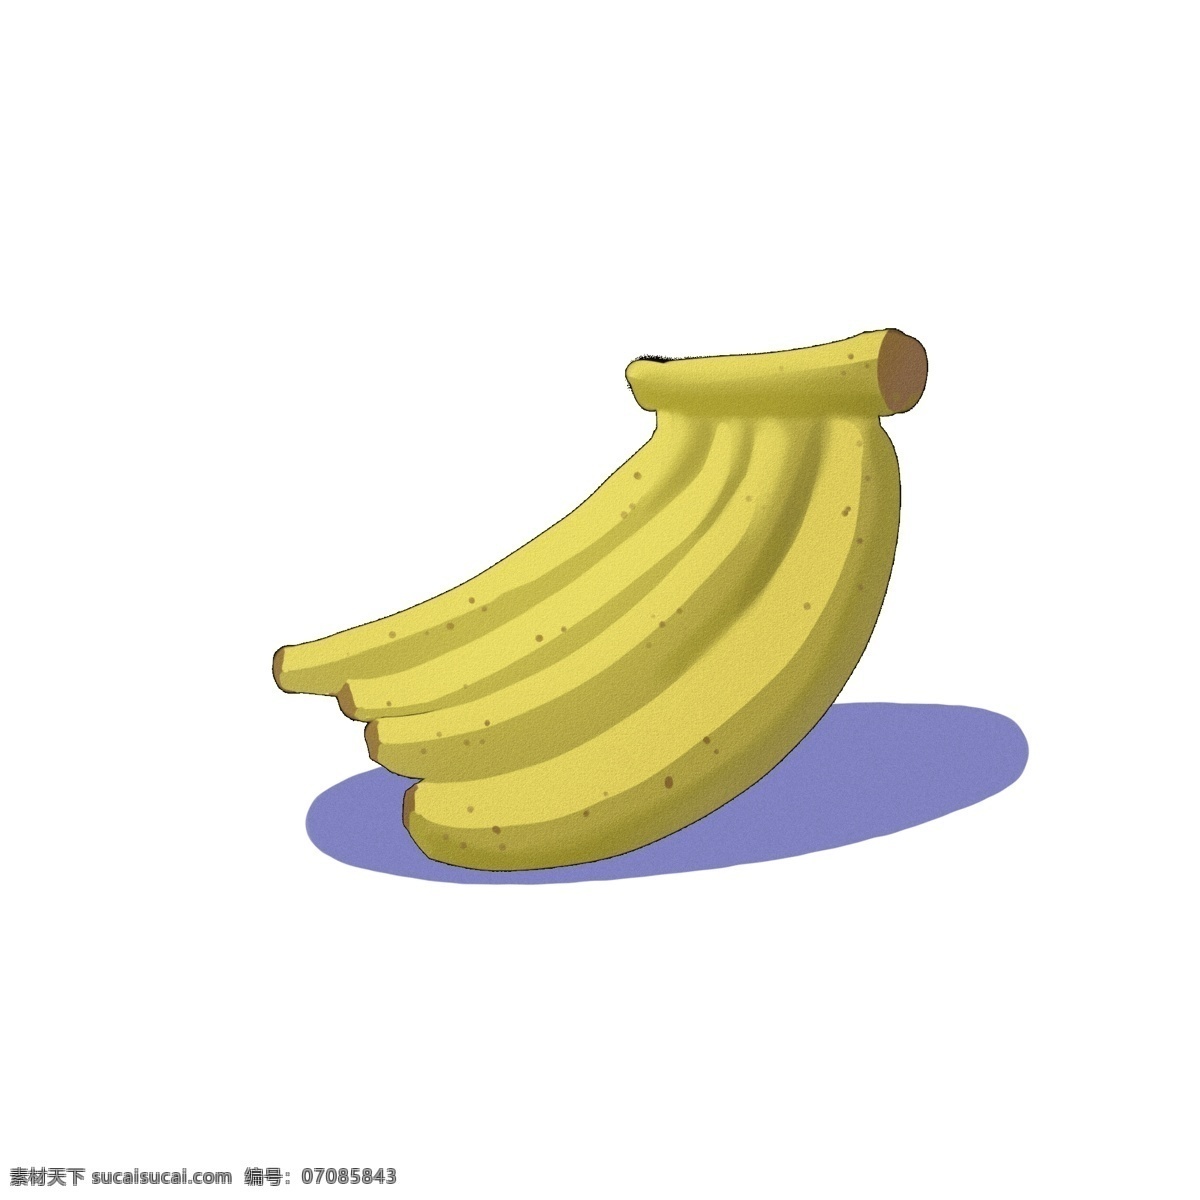 黄色香蕉 黄色 香蕉 卡通 手绘 简洁 可爱